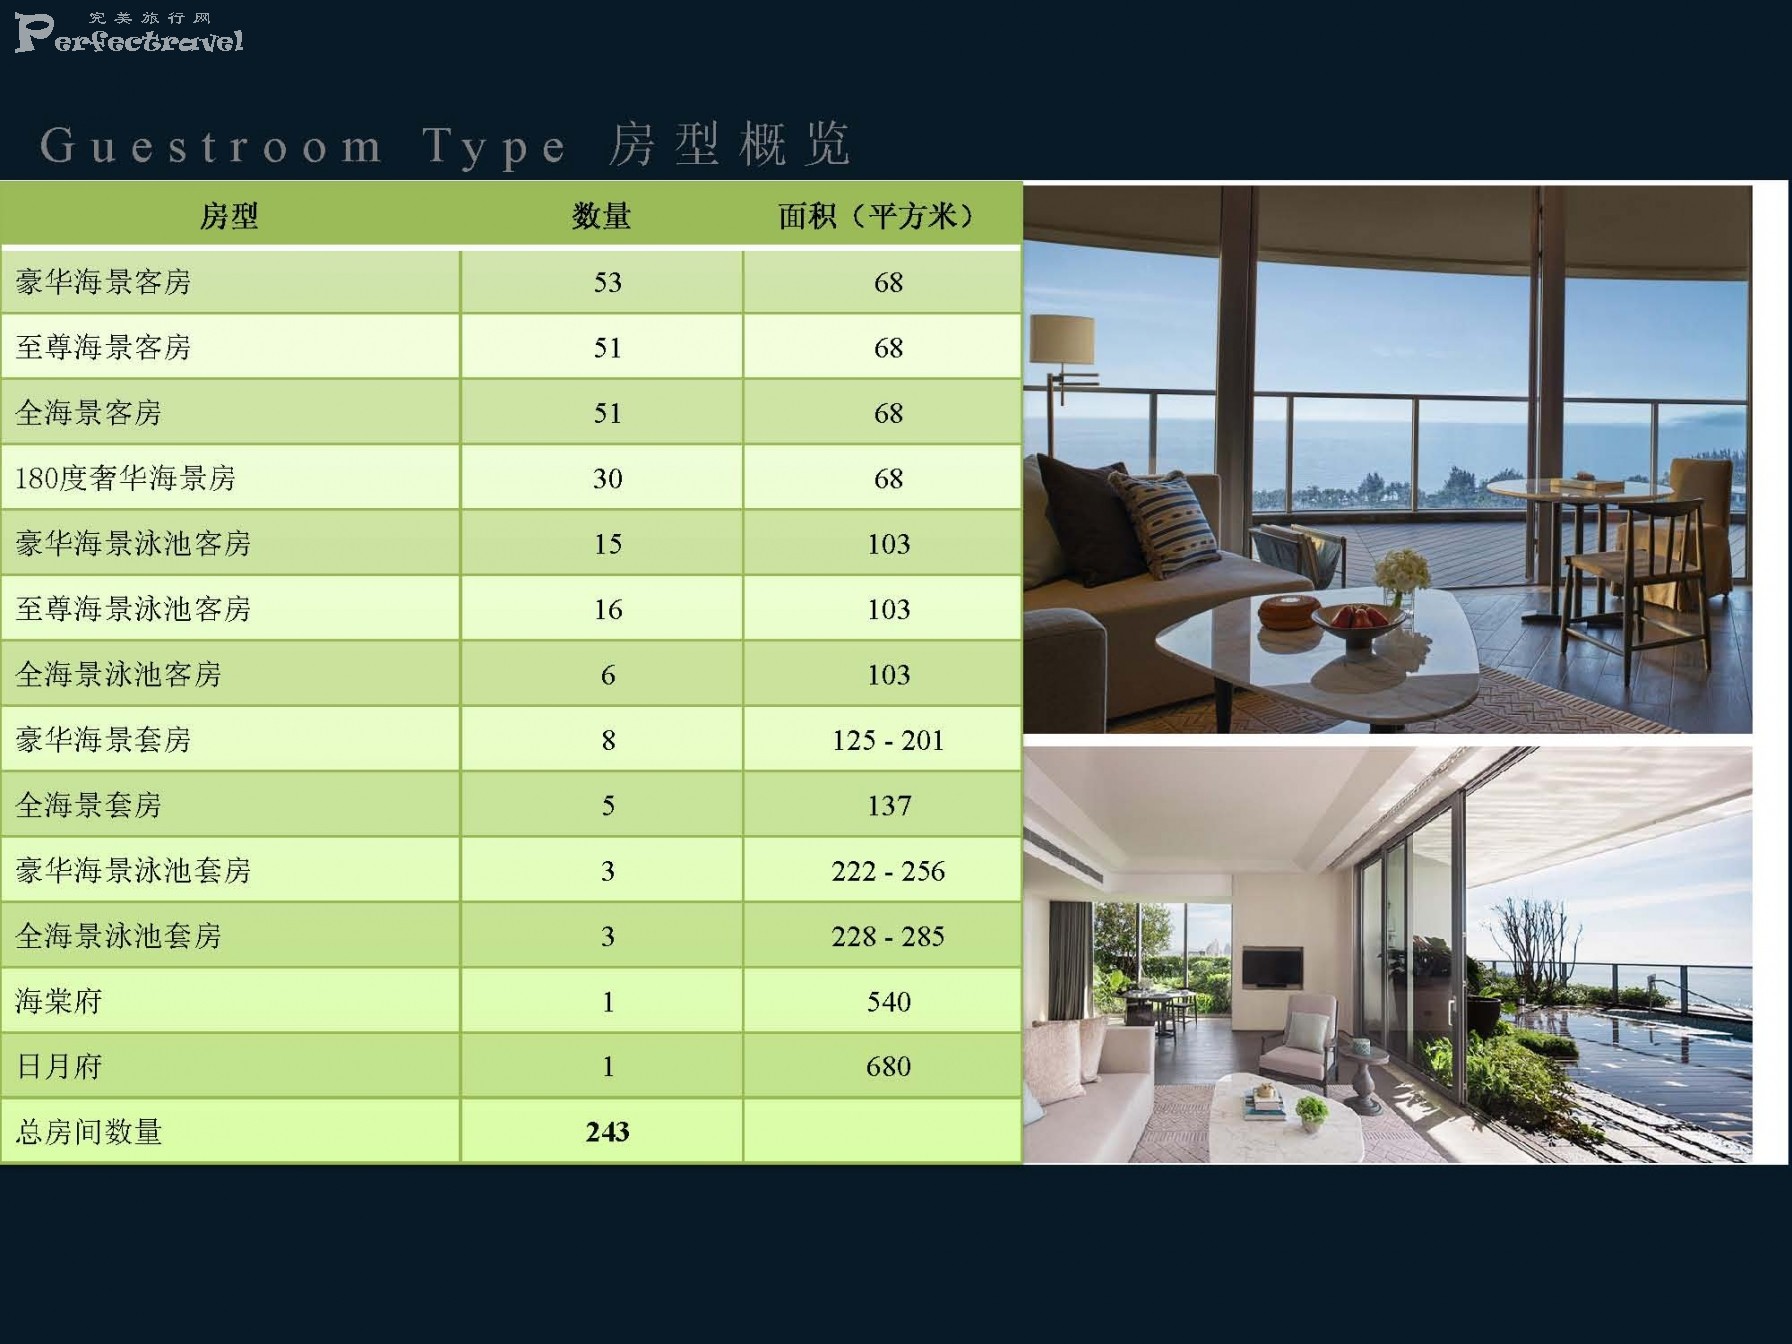 三亚保利瑰丽酒店介绍-2020_Page_04.jpg